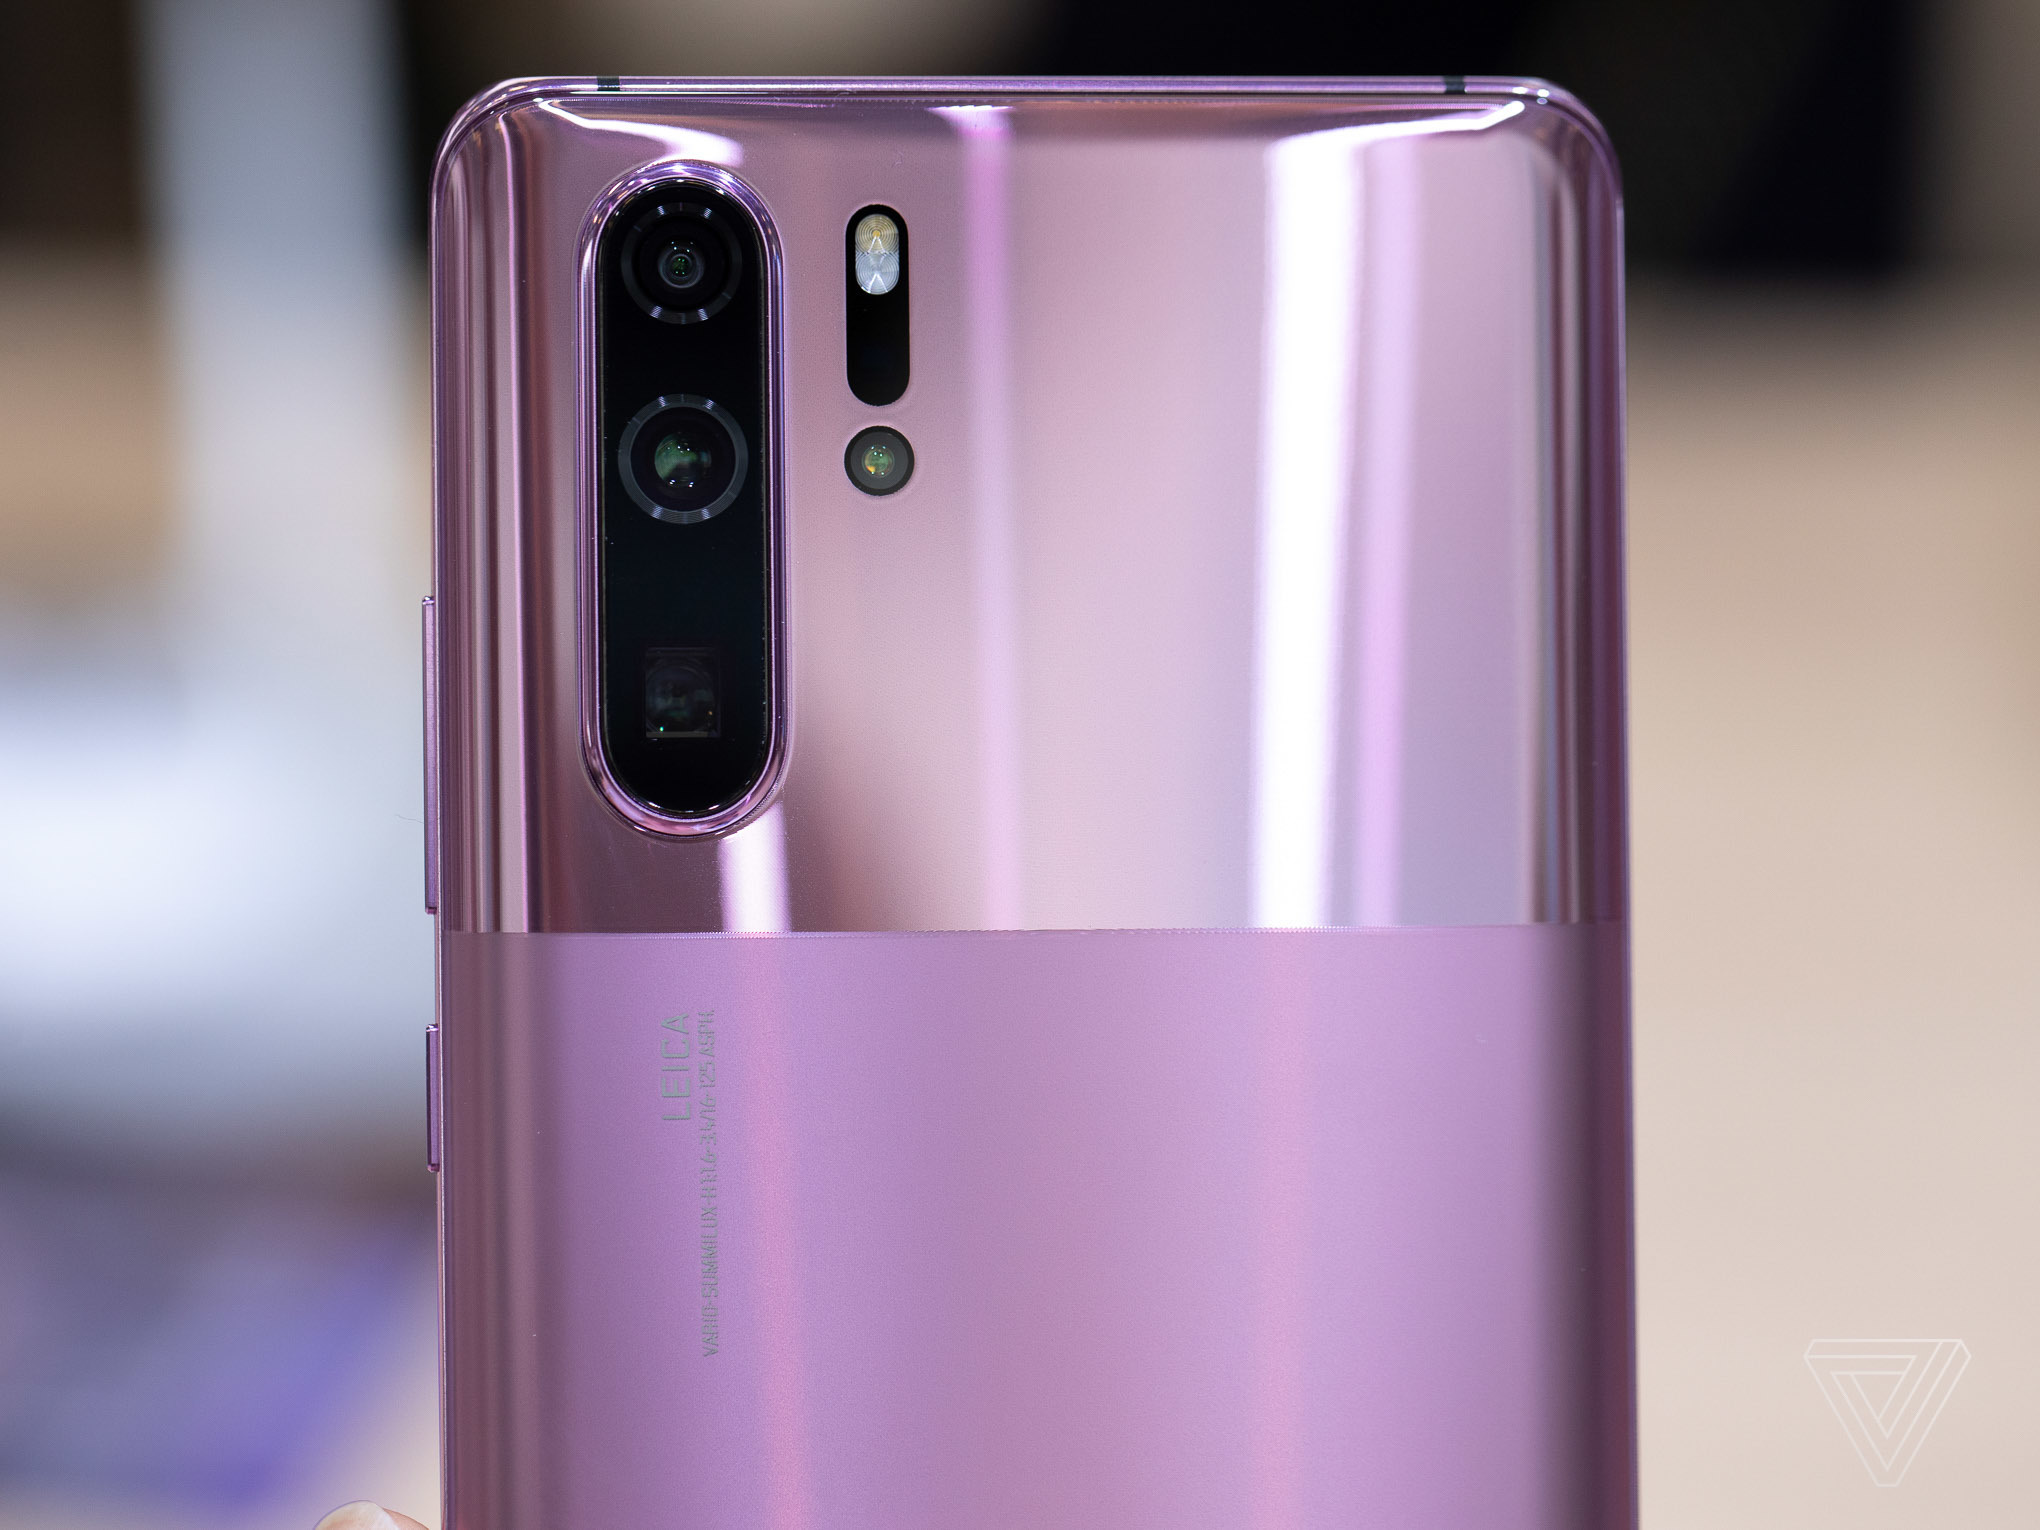 Huawei ‘lách luật’ với phiên bản P30 Pro mặt lưng nhám và bóng chạy Android 10